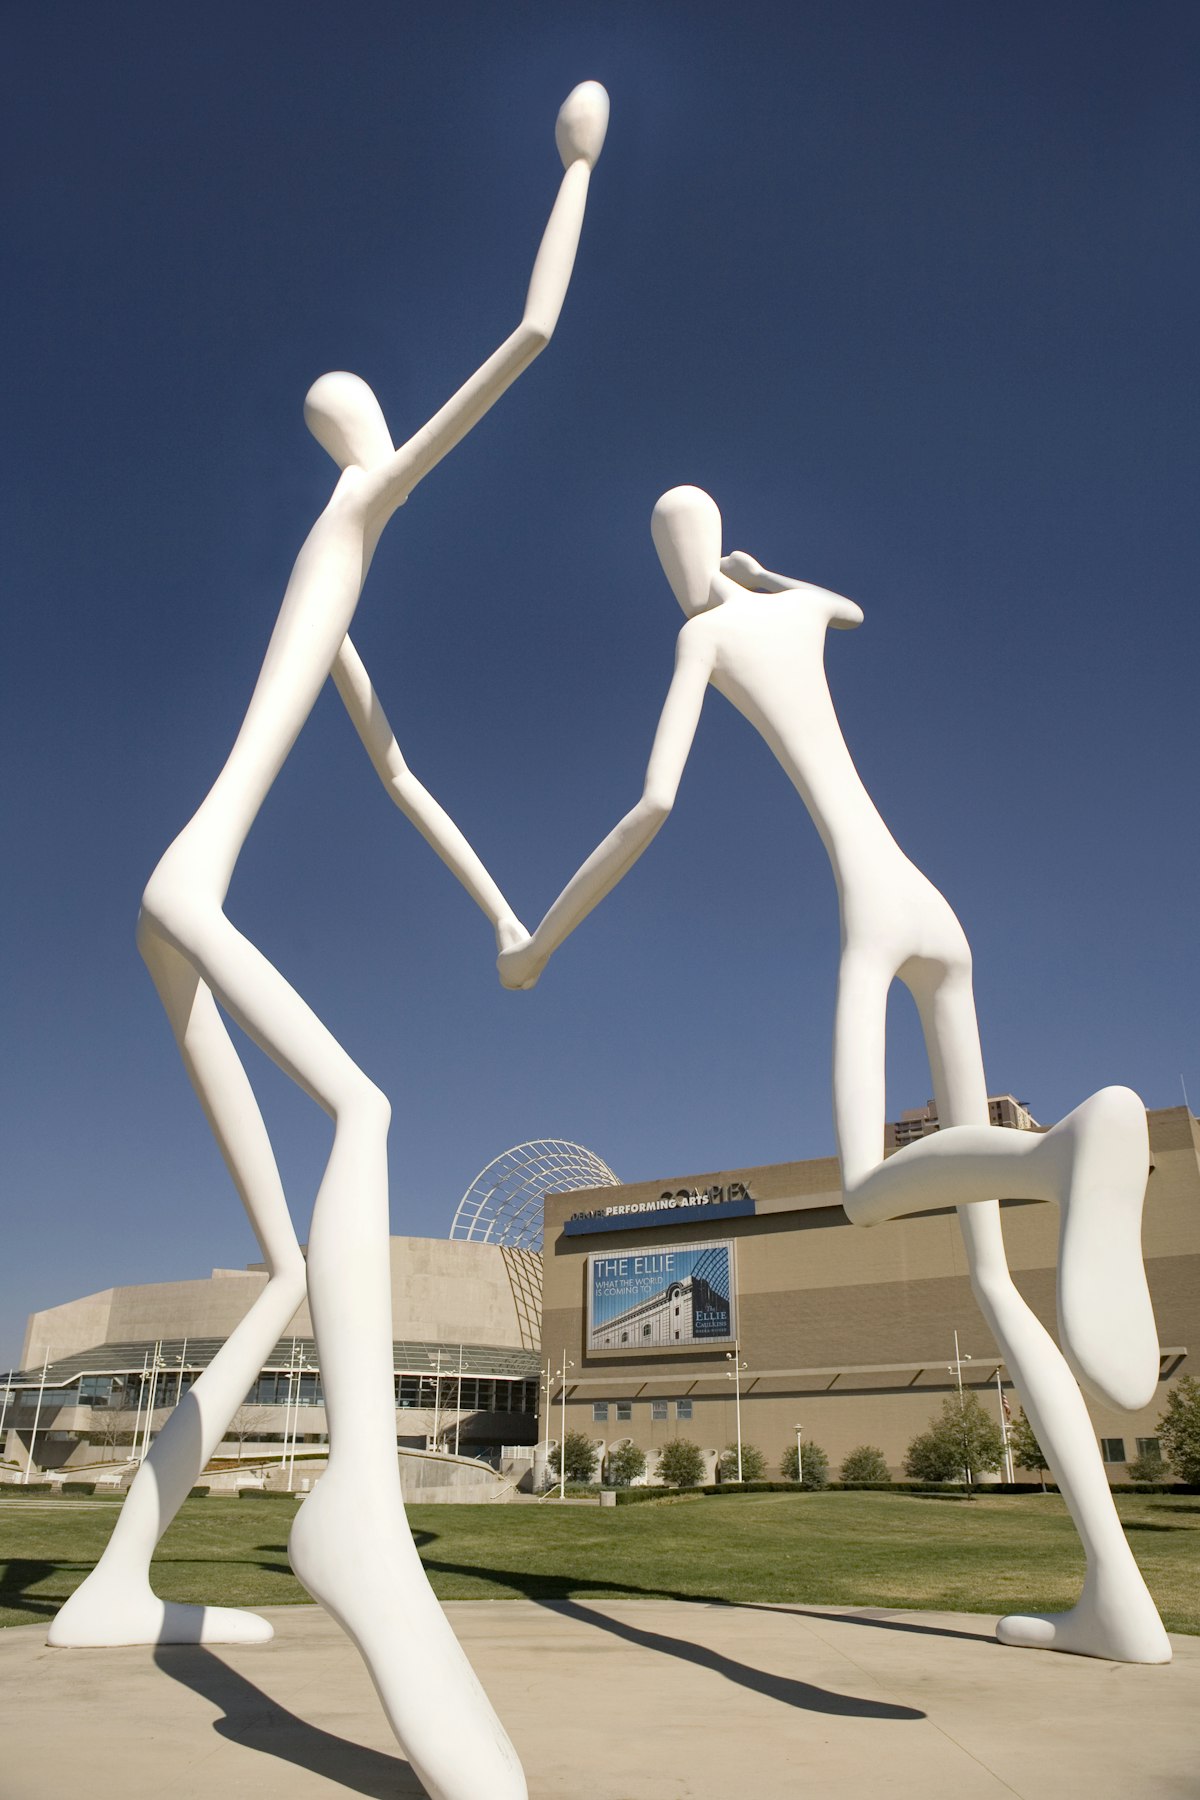 A sculpture at the Denver Performing Arts Complex